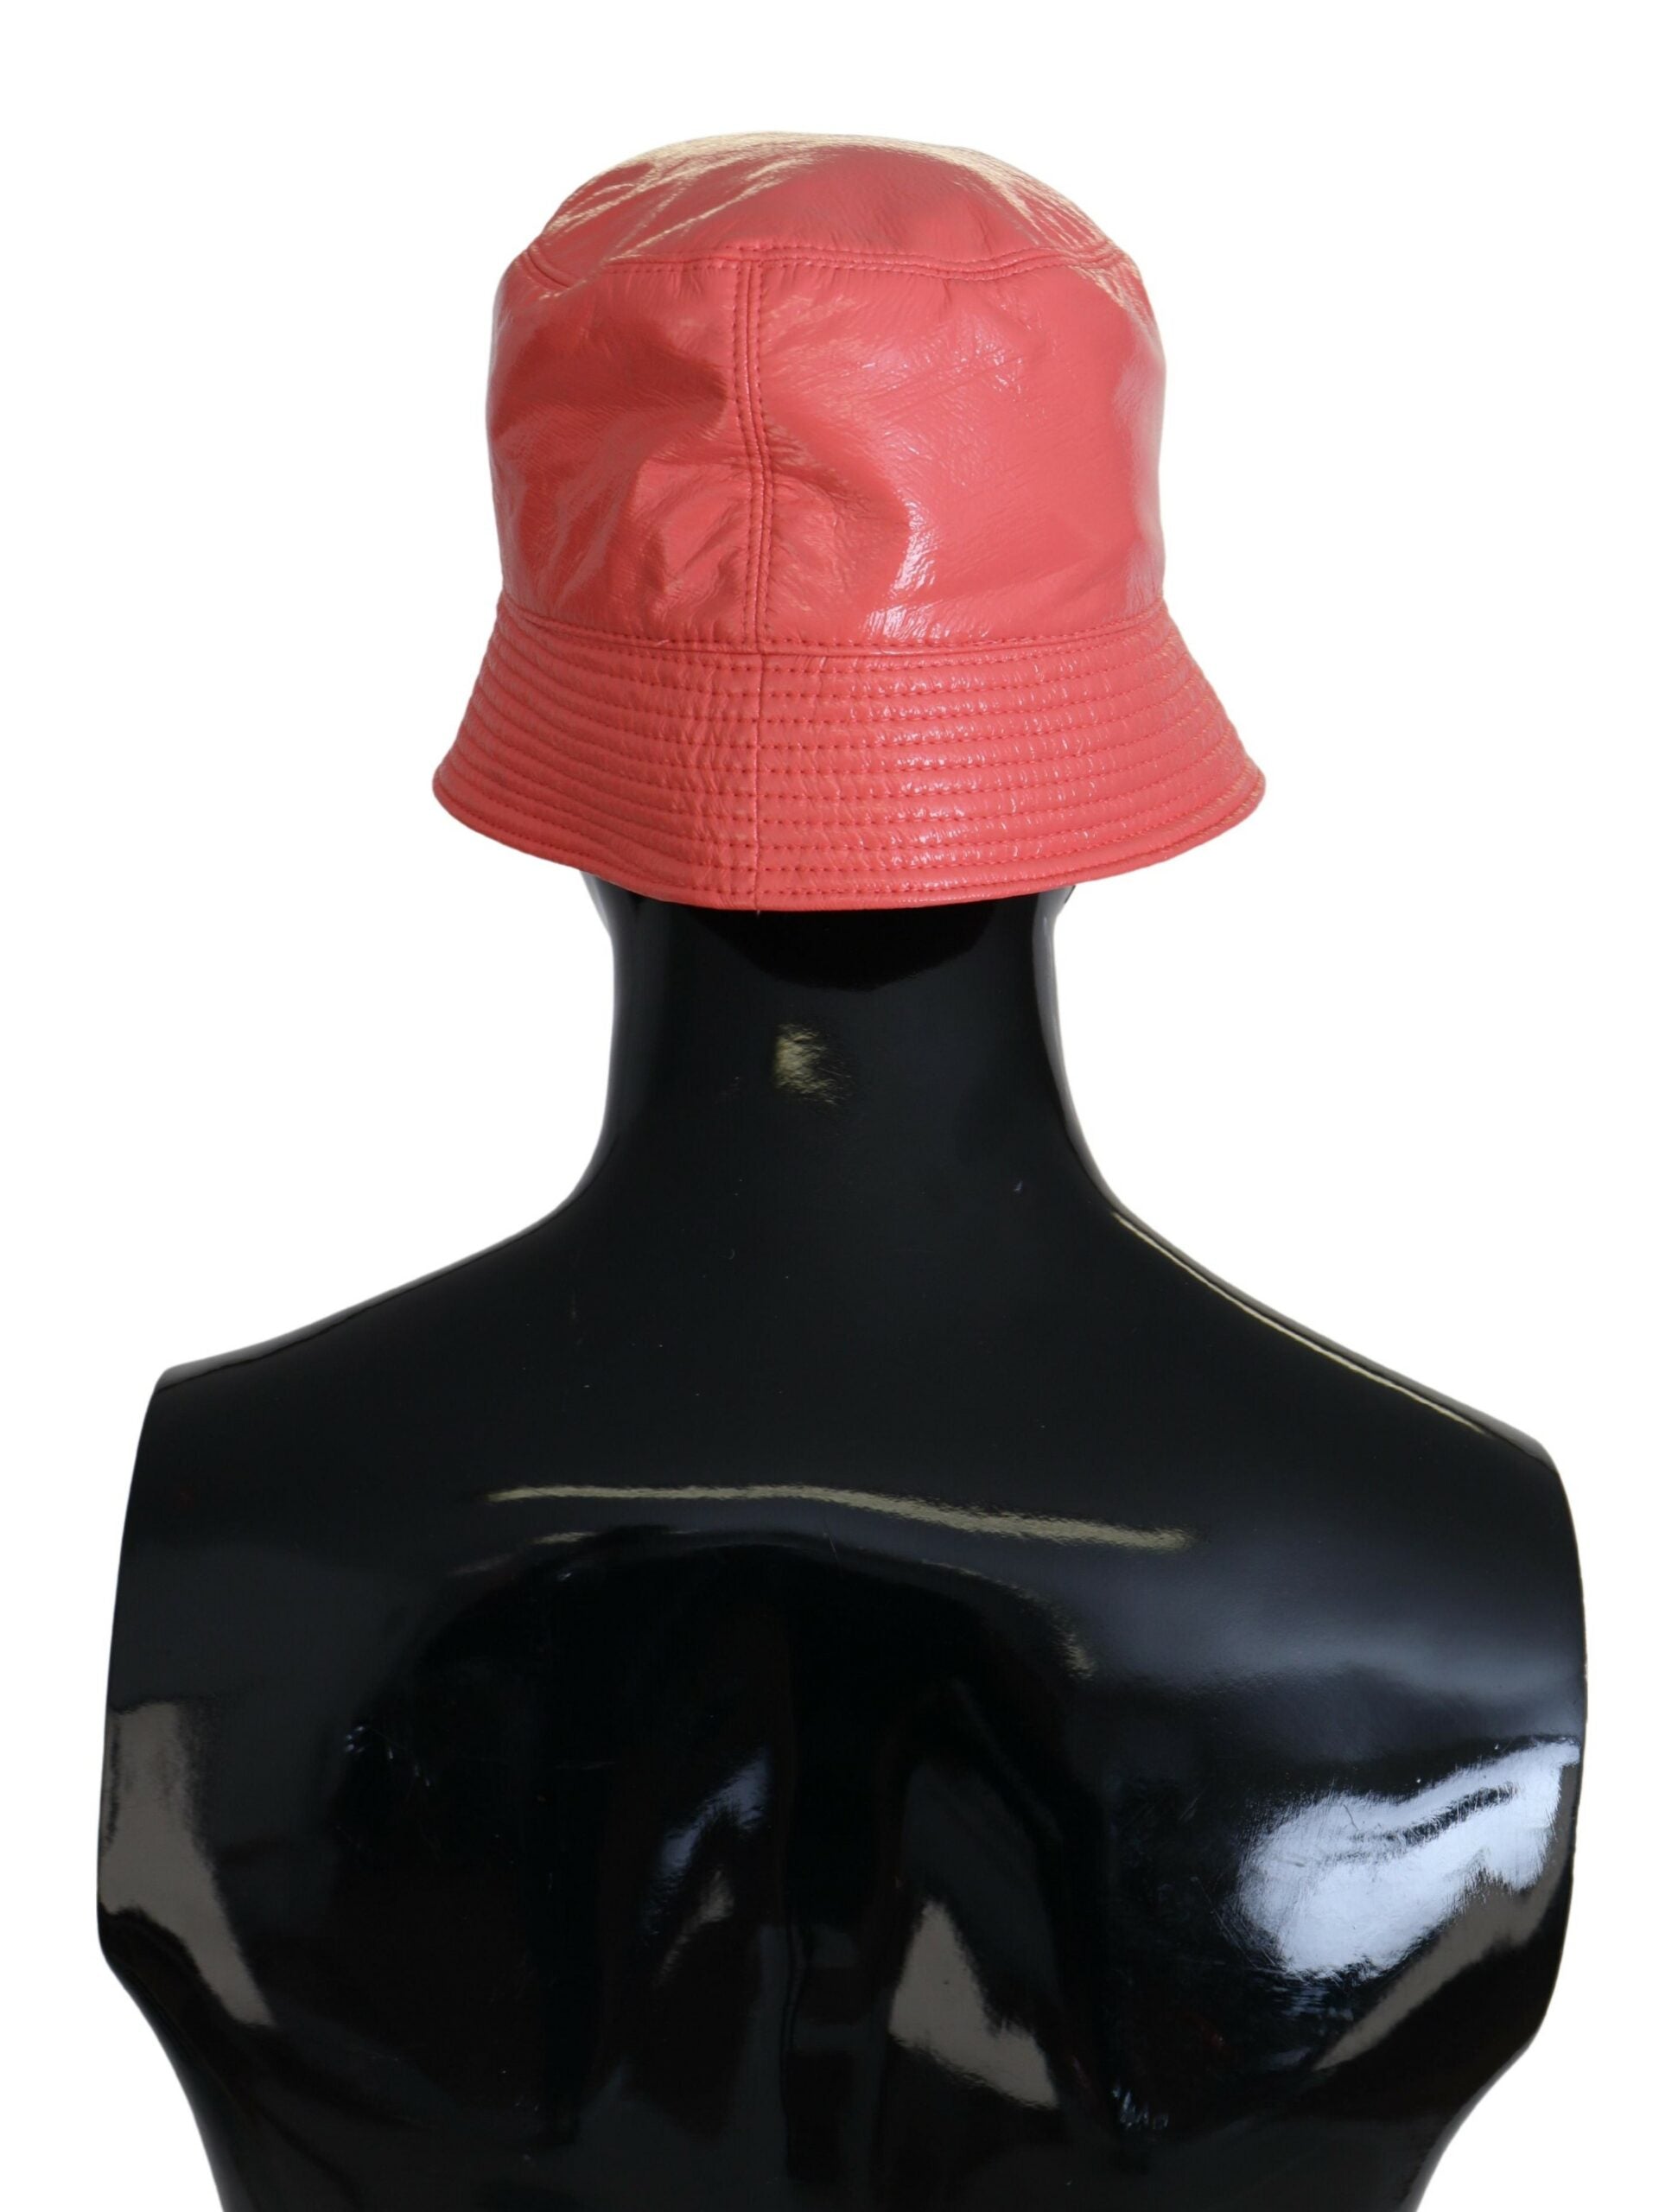 Dolce & Gabbana Elegant Peach Bucket Hat - Summer Chic Essential